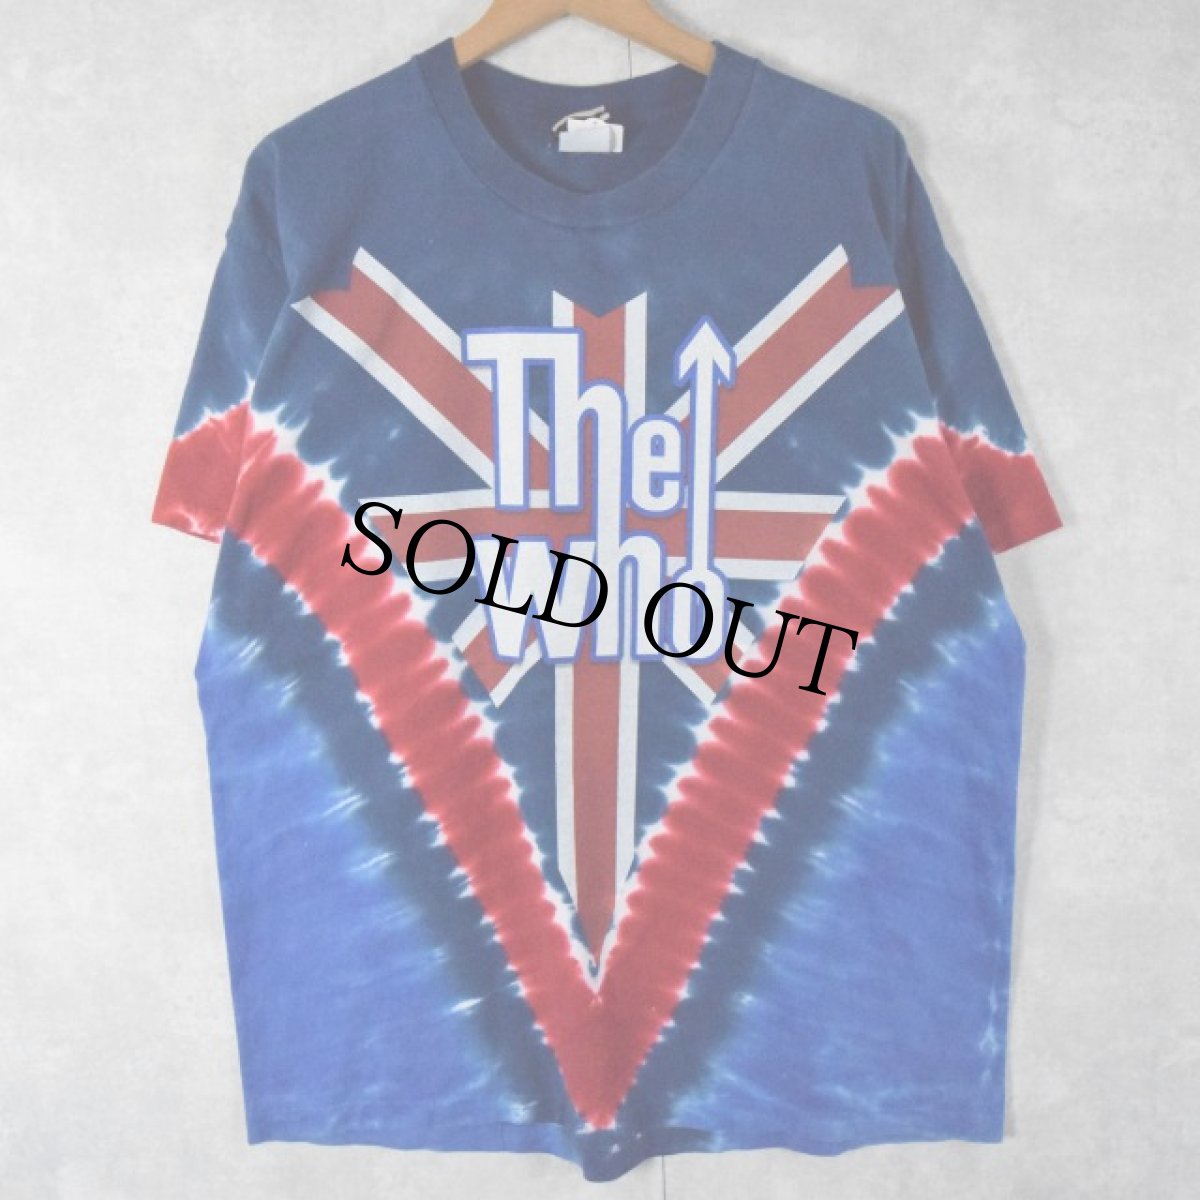 画像1: 2003 LIQUID BLUE "The Who" USA製 タイダイ ロックバンドTシャツ L (1)